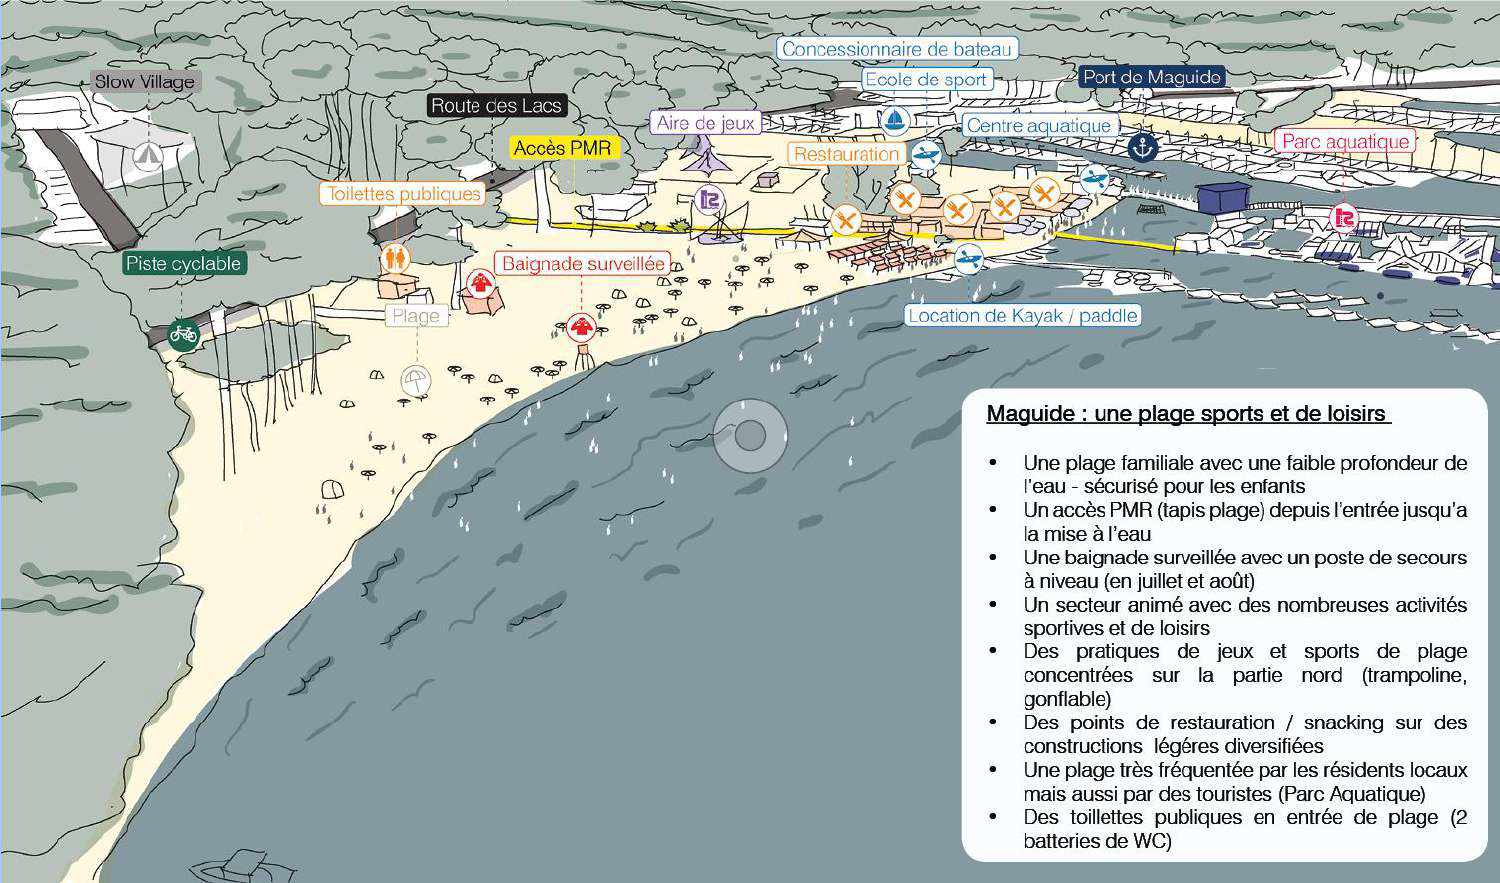 Extrait du diagnostic sur la plage de Maguide